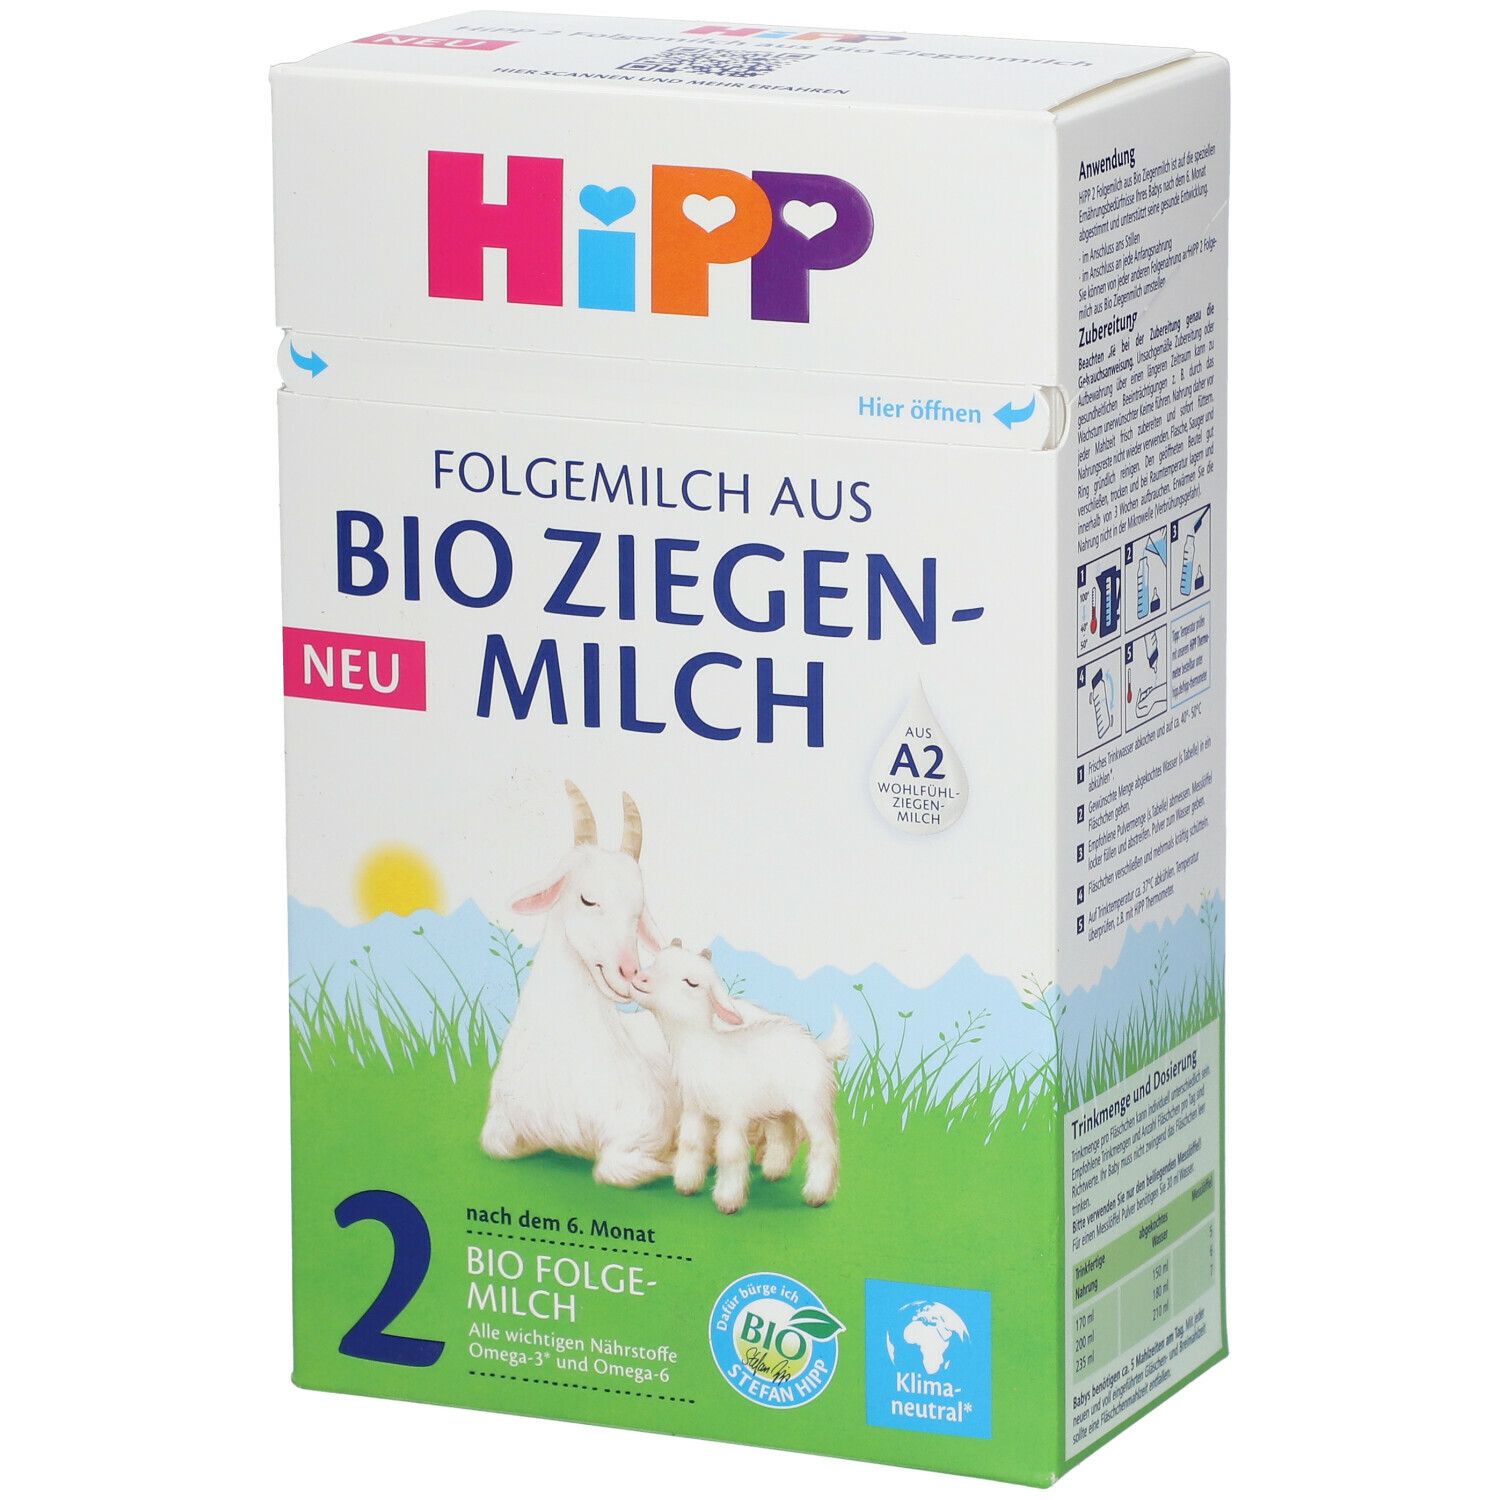 HiPP 2 Folgemilch aus Bioziegenmilch